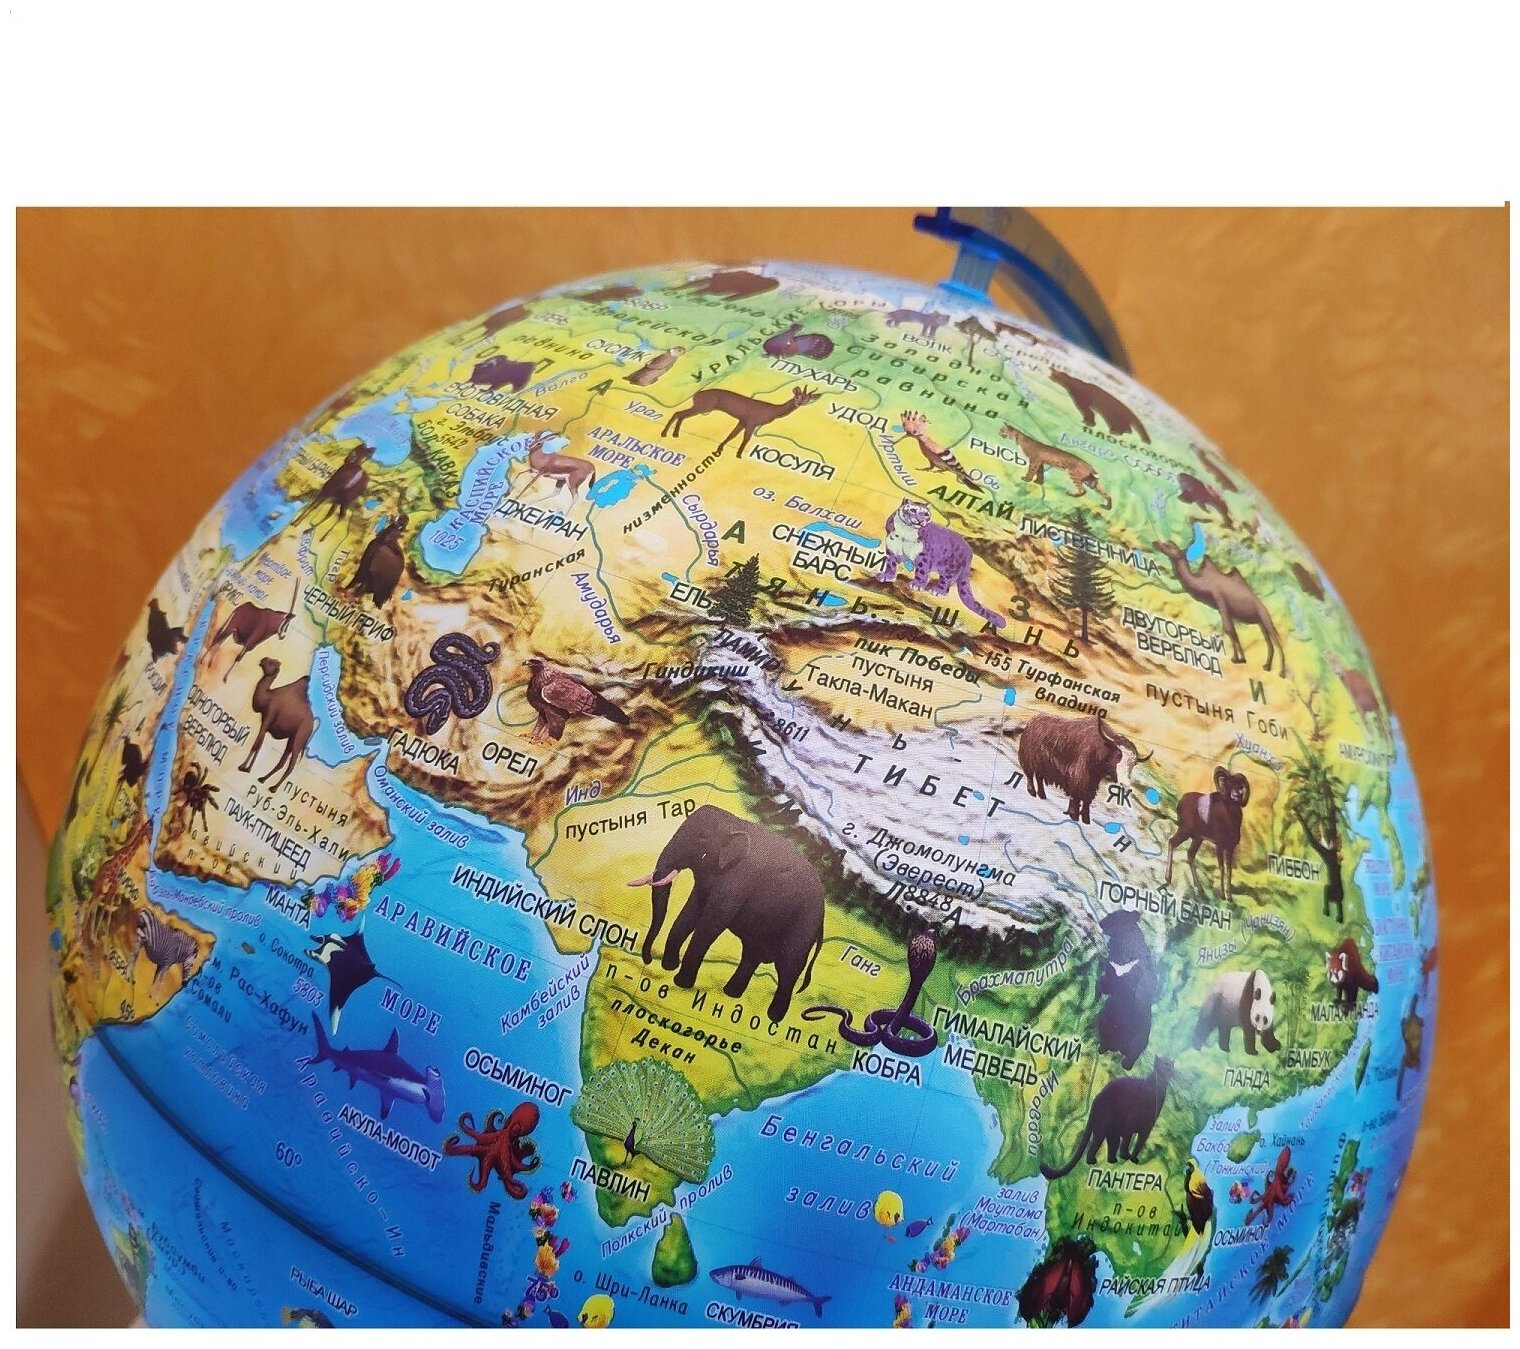 Globen Глобус Зоогеографический (Детский) с подсветкой от батареек, диаметр 32 см.